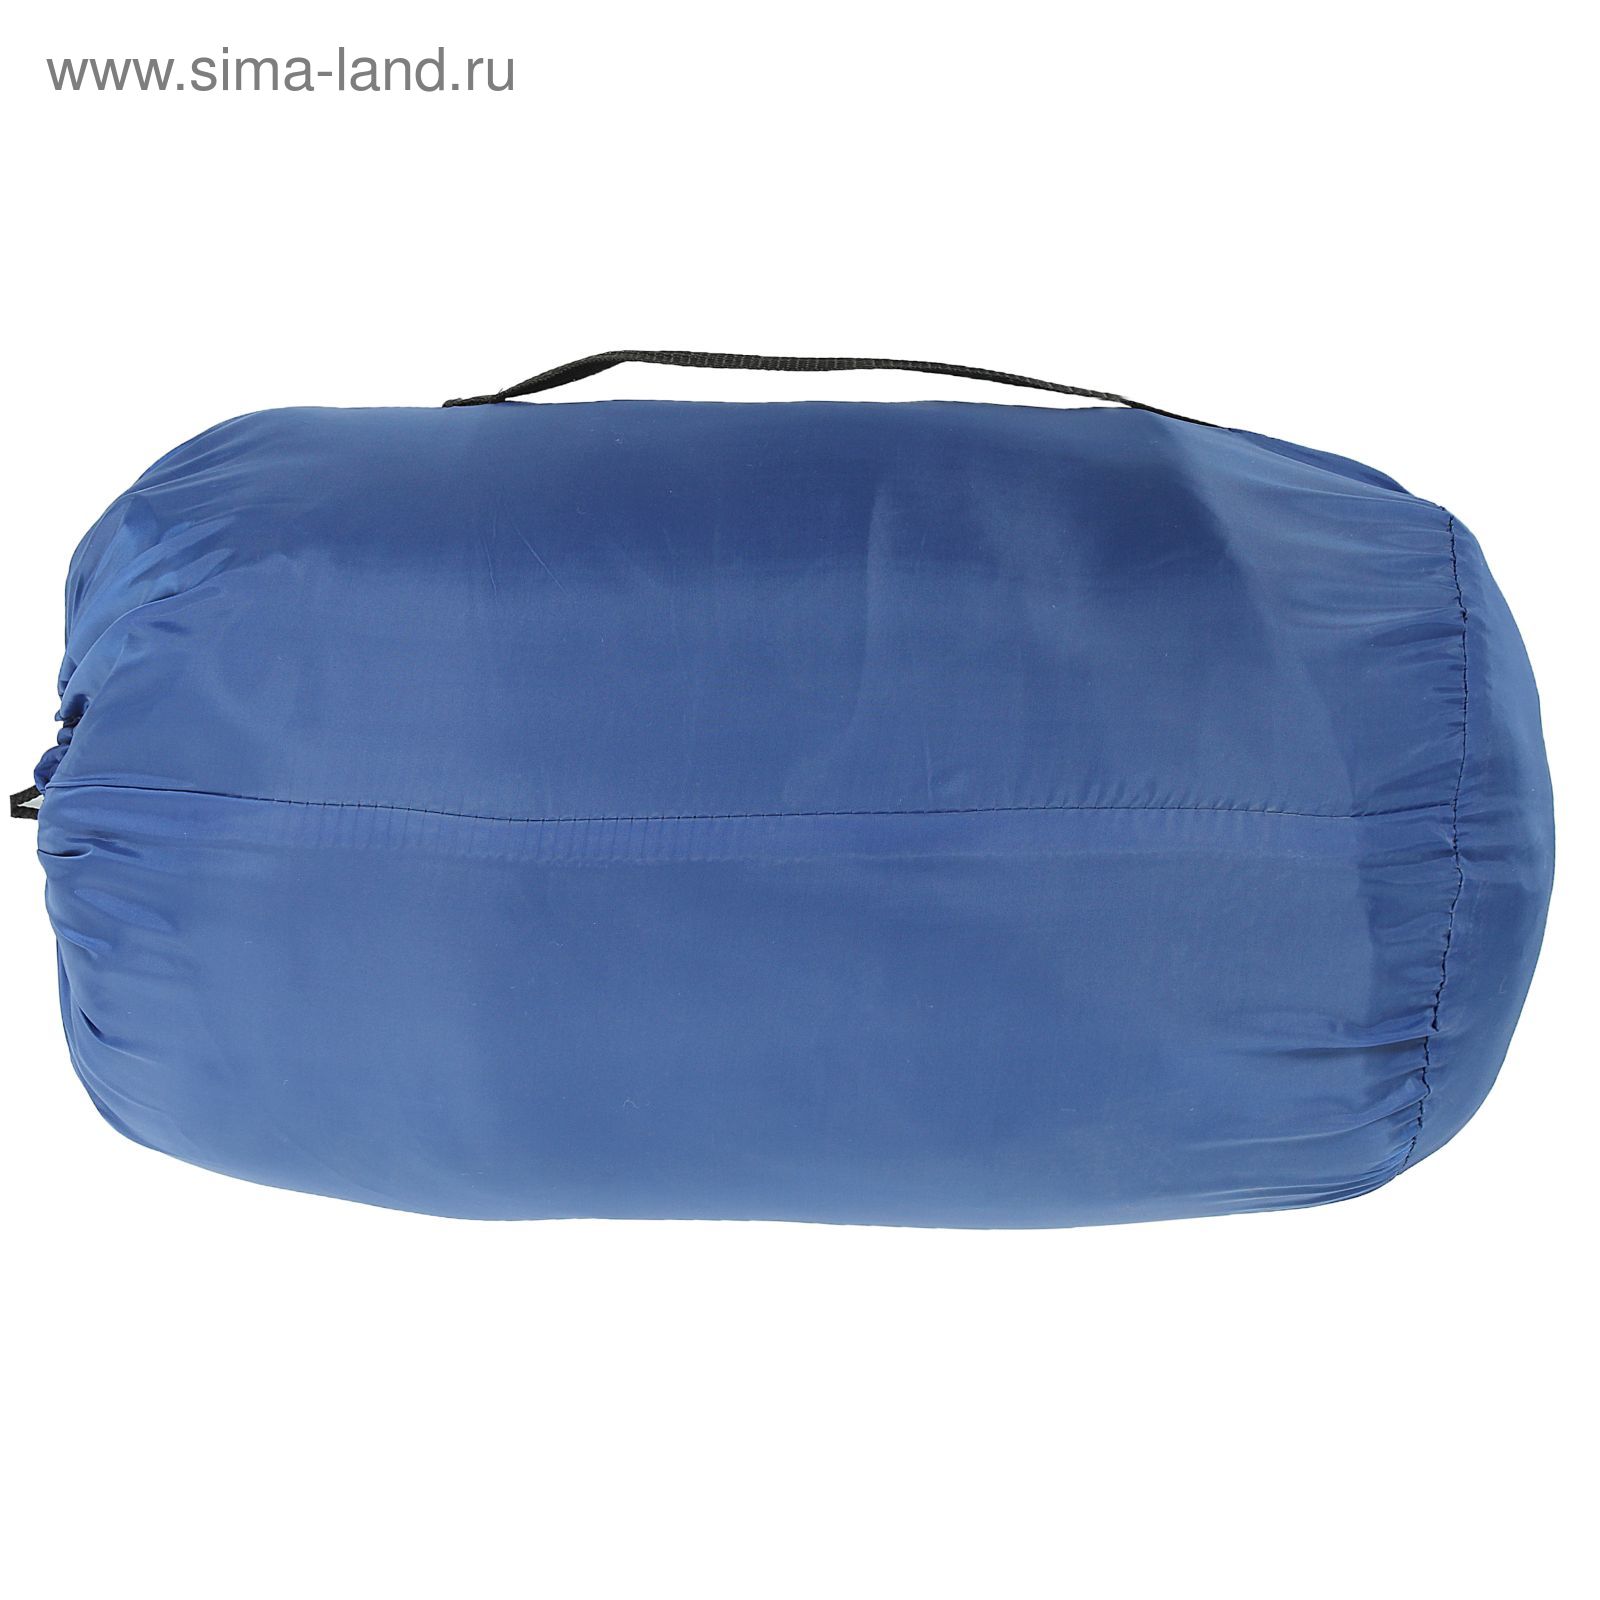 Спальный мешок-кокон "Комфорт", 4-х слойный, размер 210 х 70 см, цвет микс